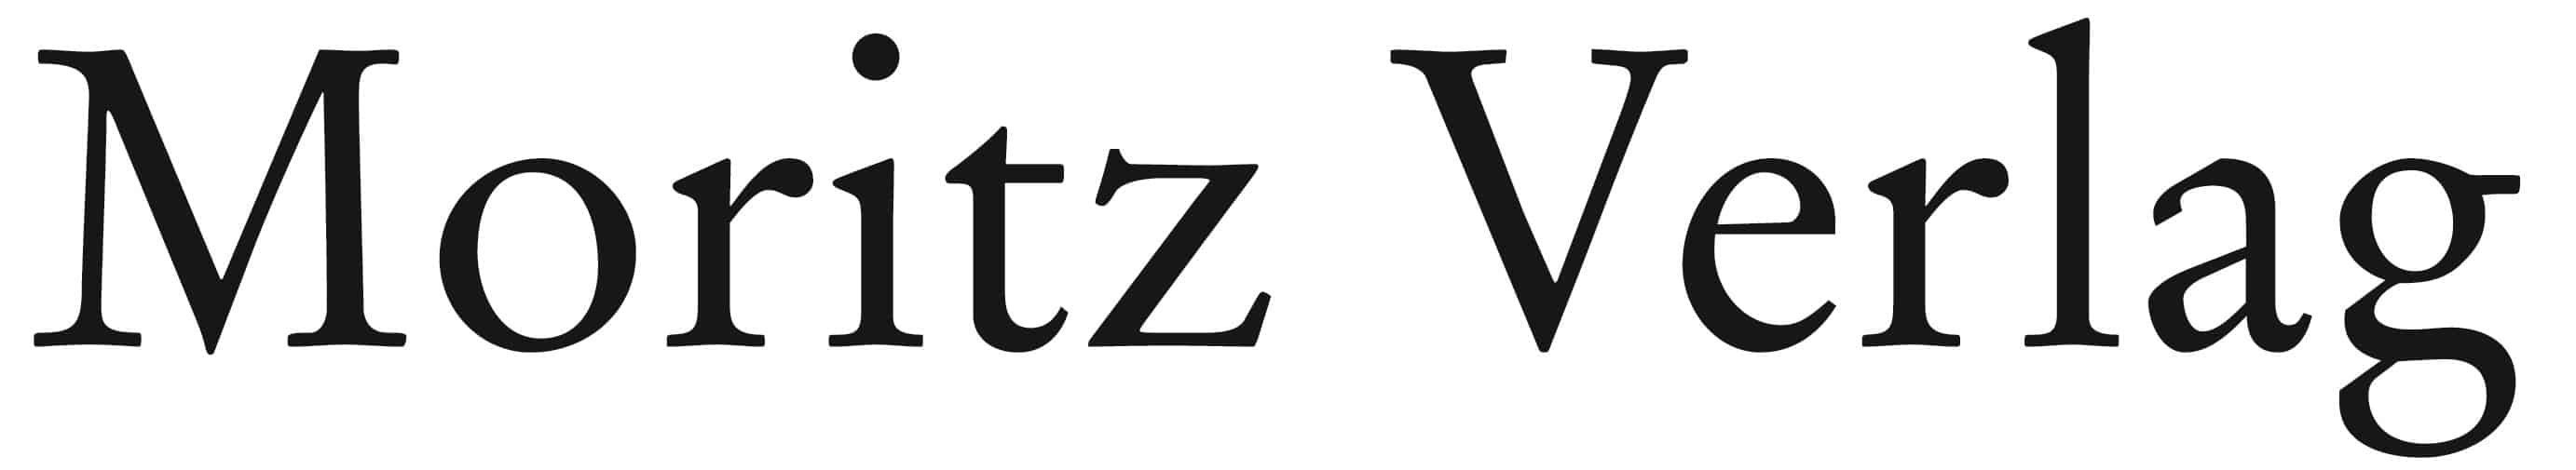 Logo des Moritz Verlags (Klick auf das Logo führt zur Verlagsseite)